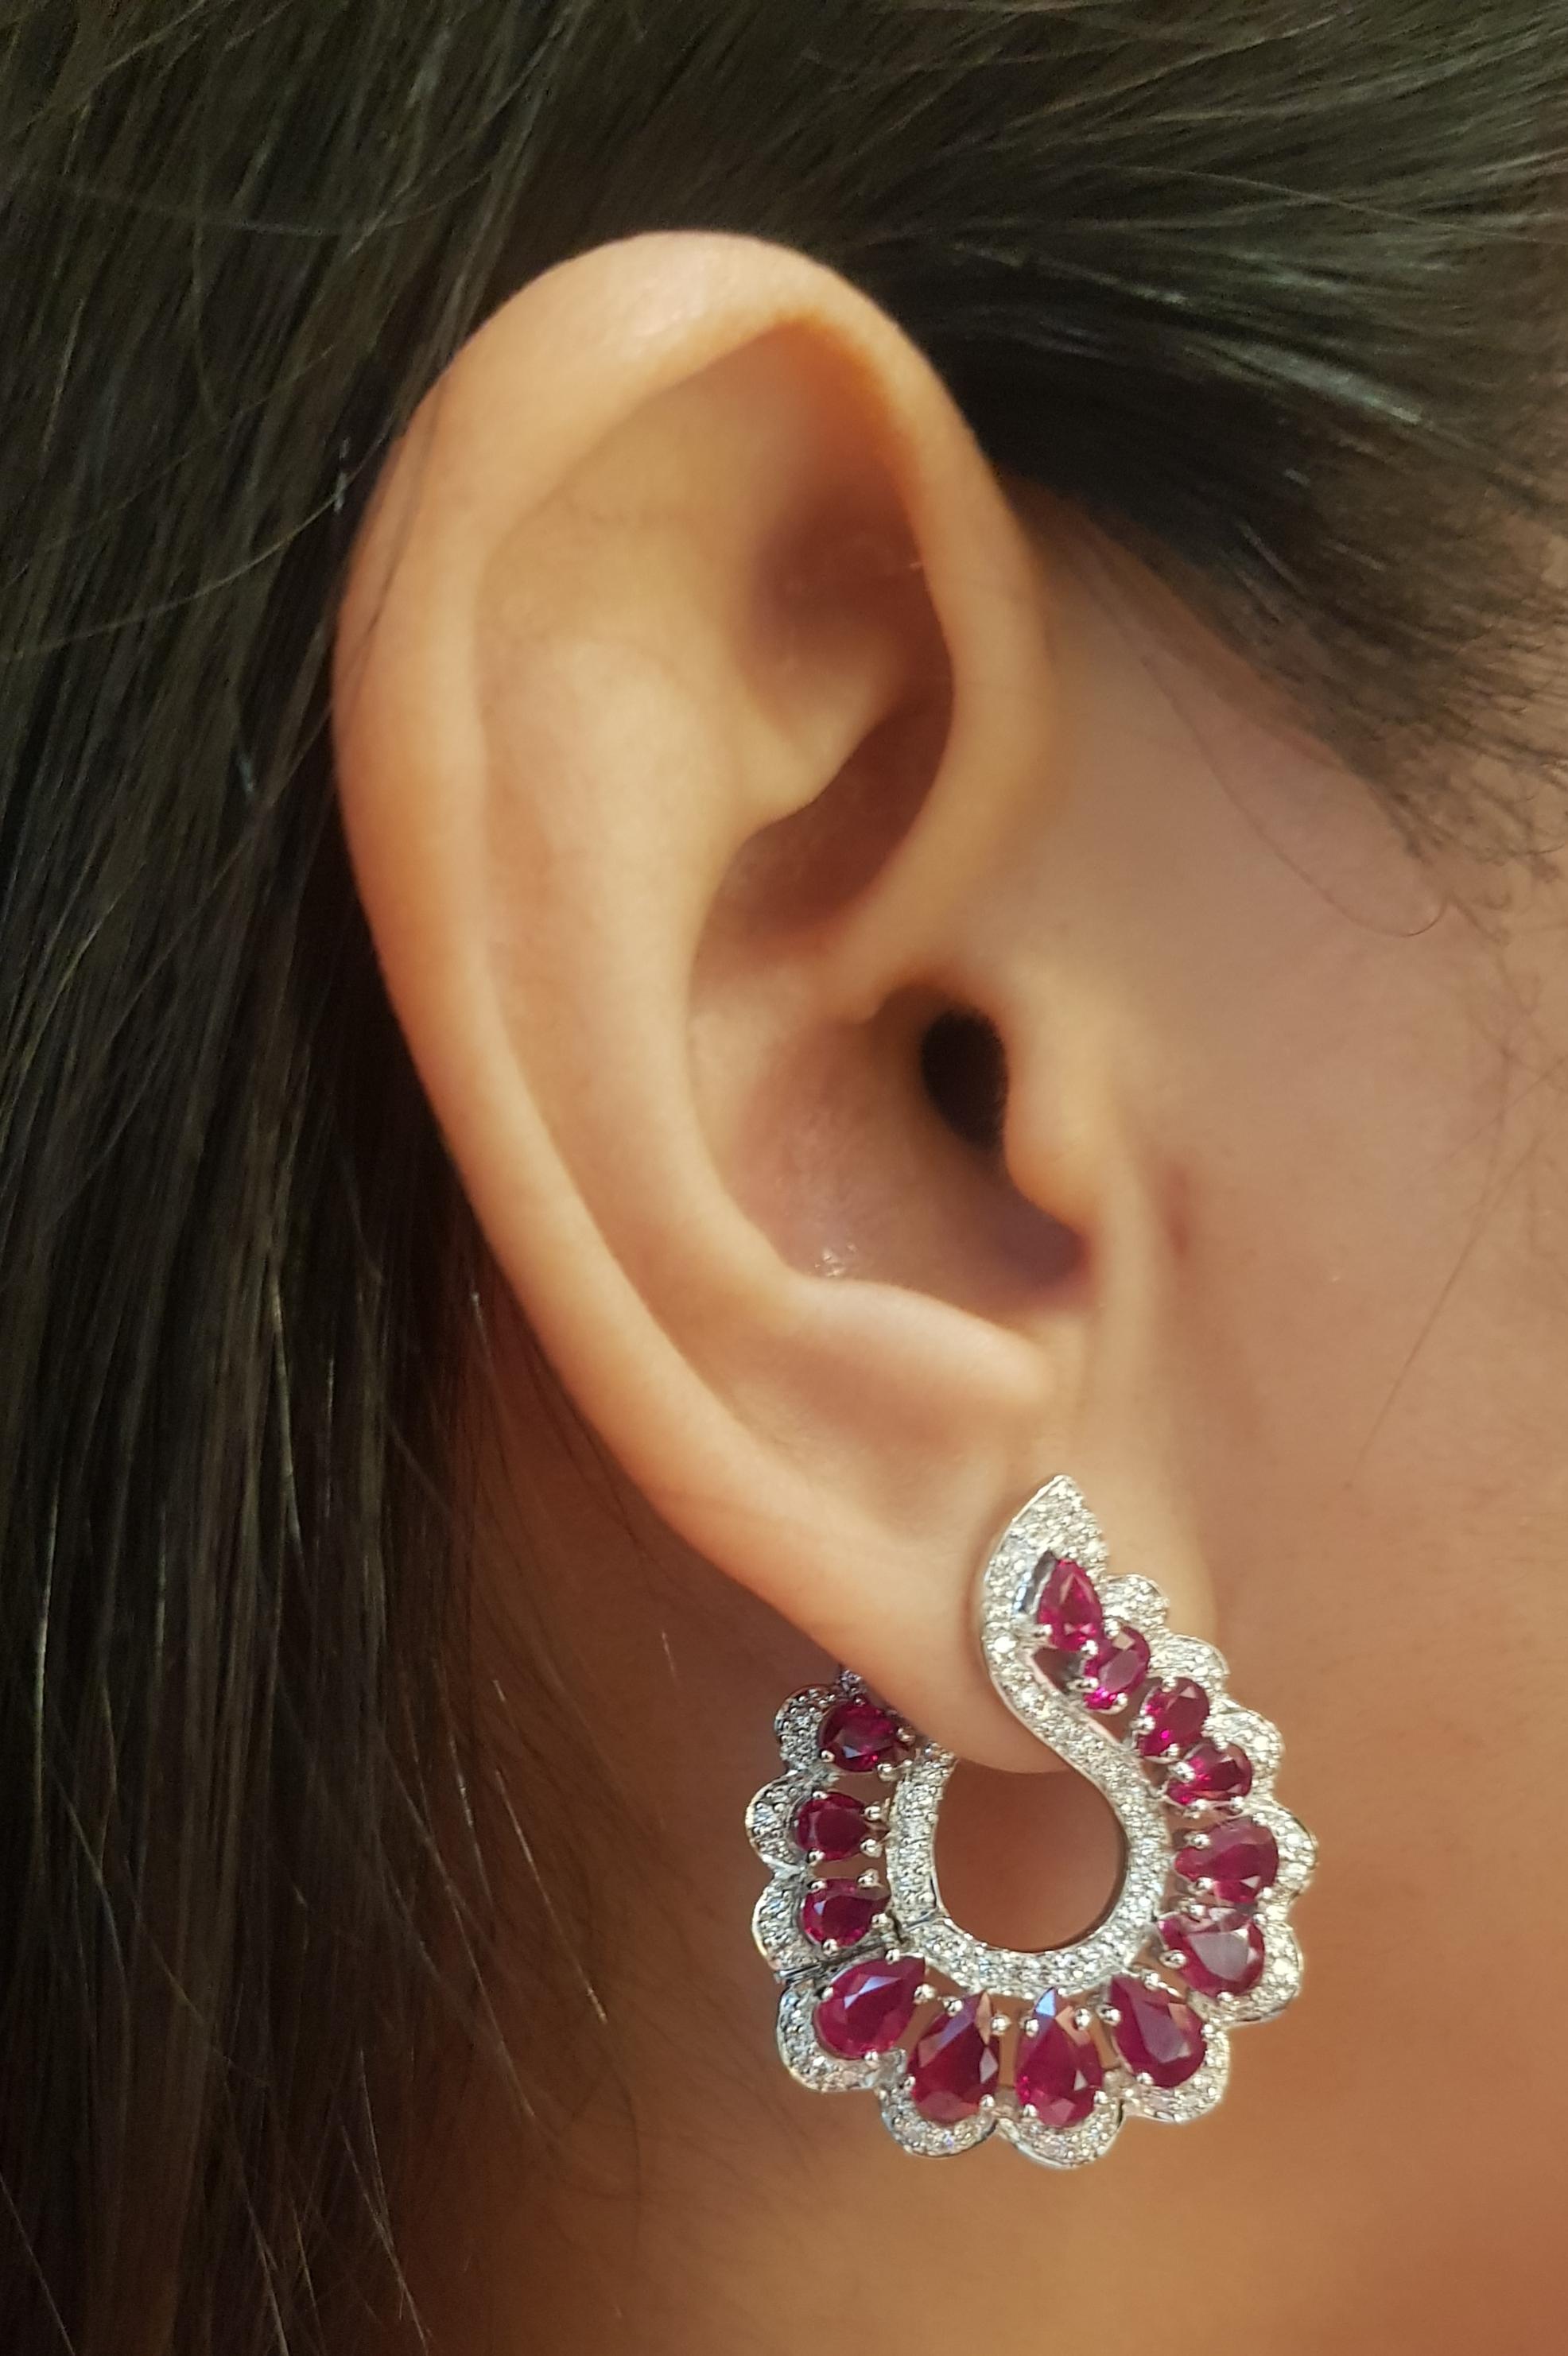 Boucles d'oreilles composées d'un rubis de 6,27 carats et d'un diamant de 1,09 carat, sertis dans une monture en or blanc 18 carats.

Largeur : 2,5 cm 
Longueur : 3,0 cm
Poids total : 15,64 grammes

